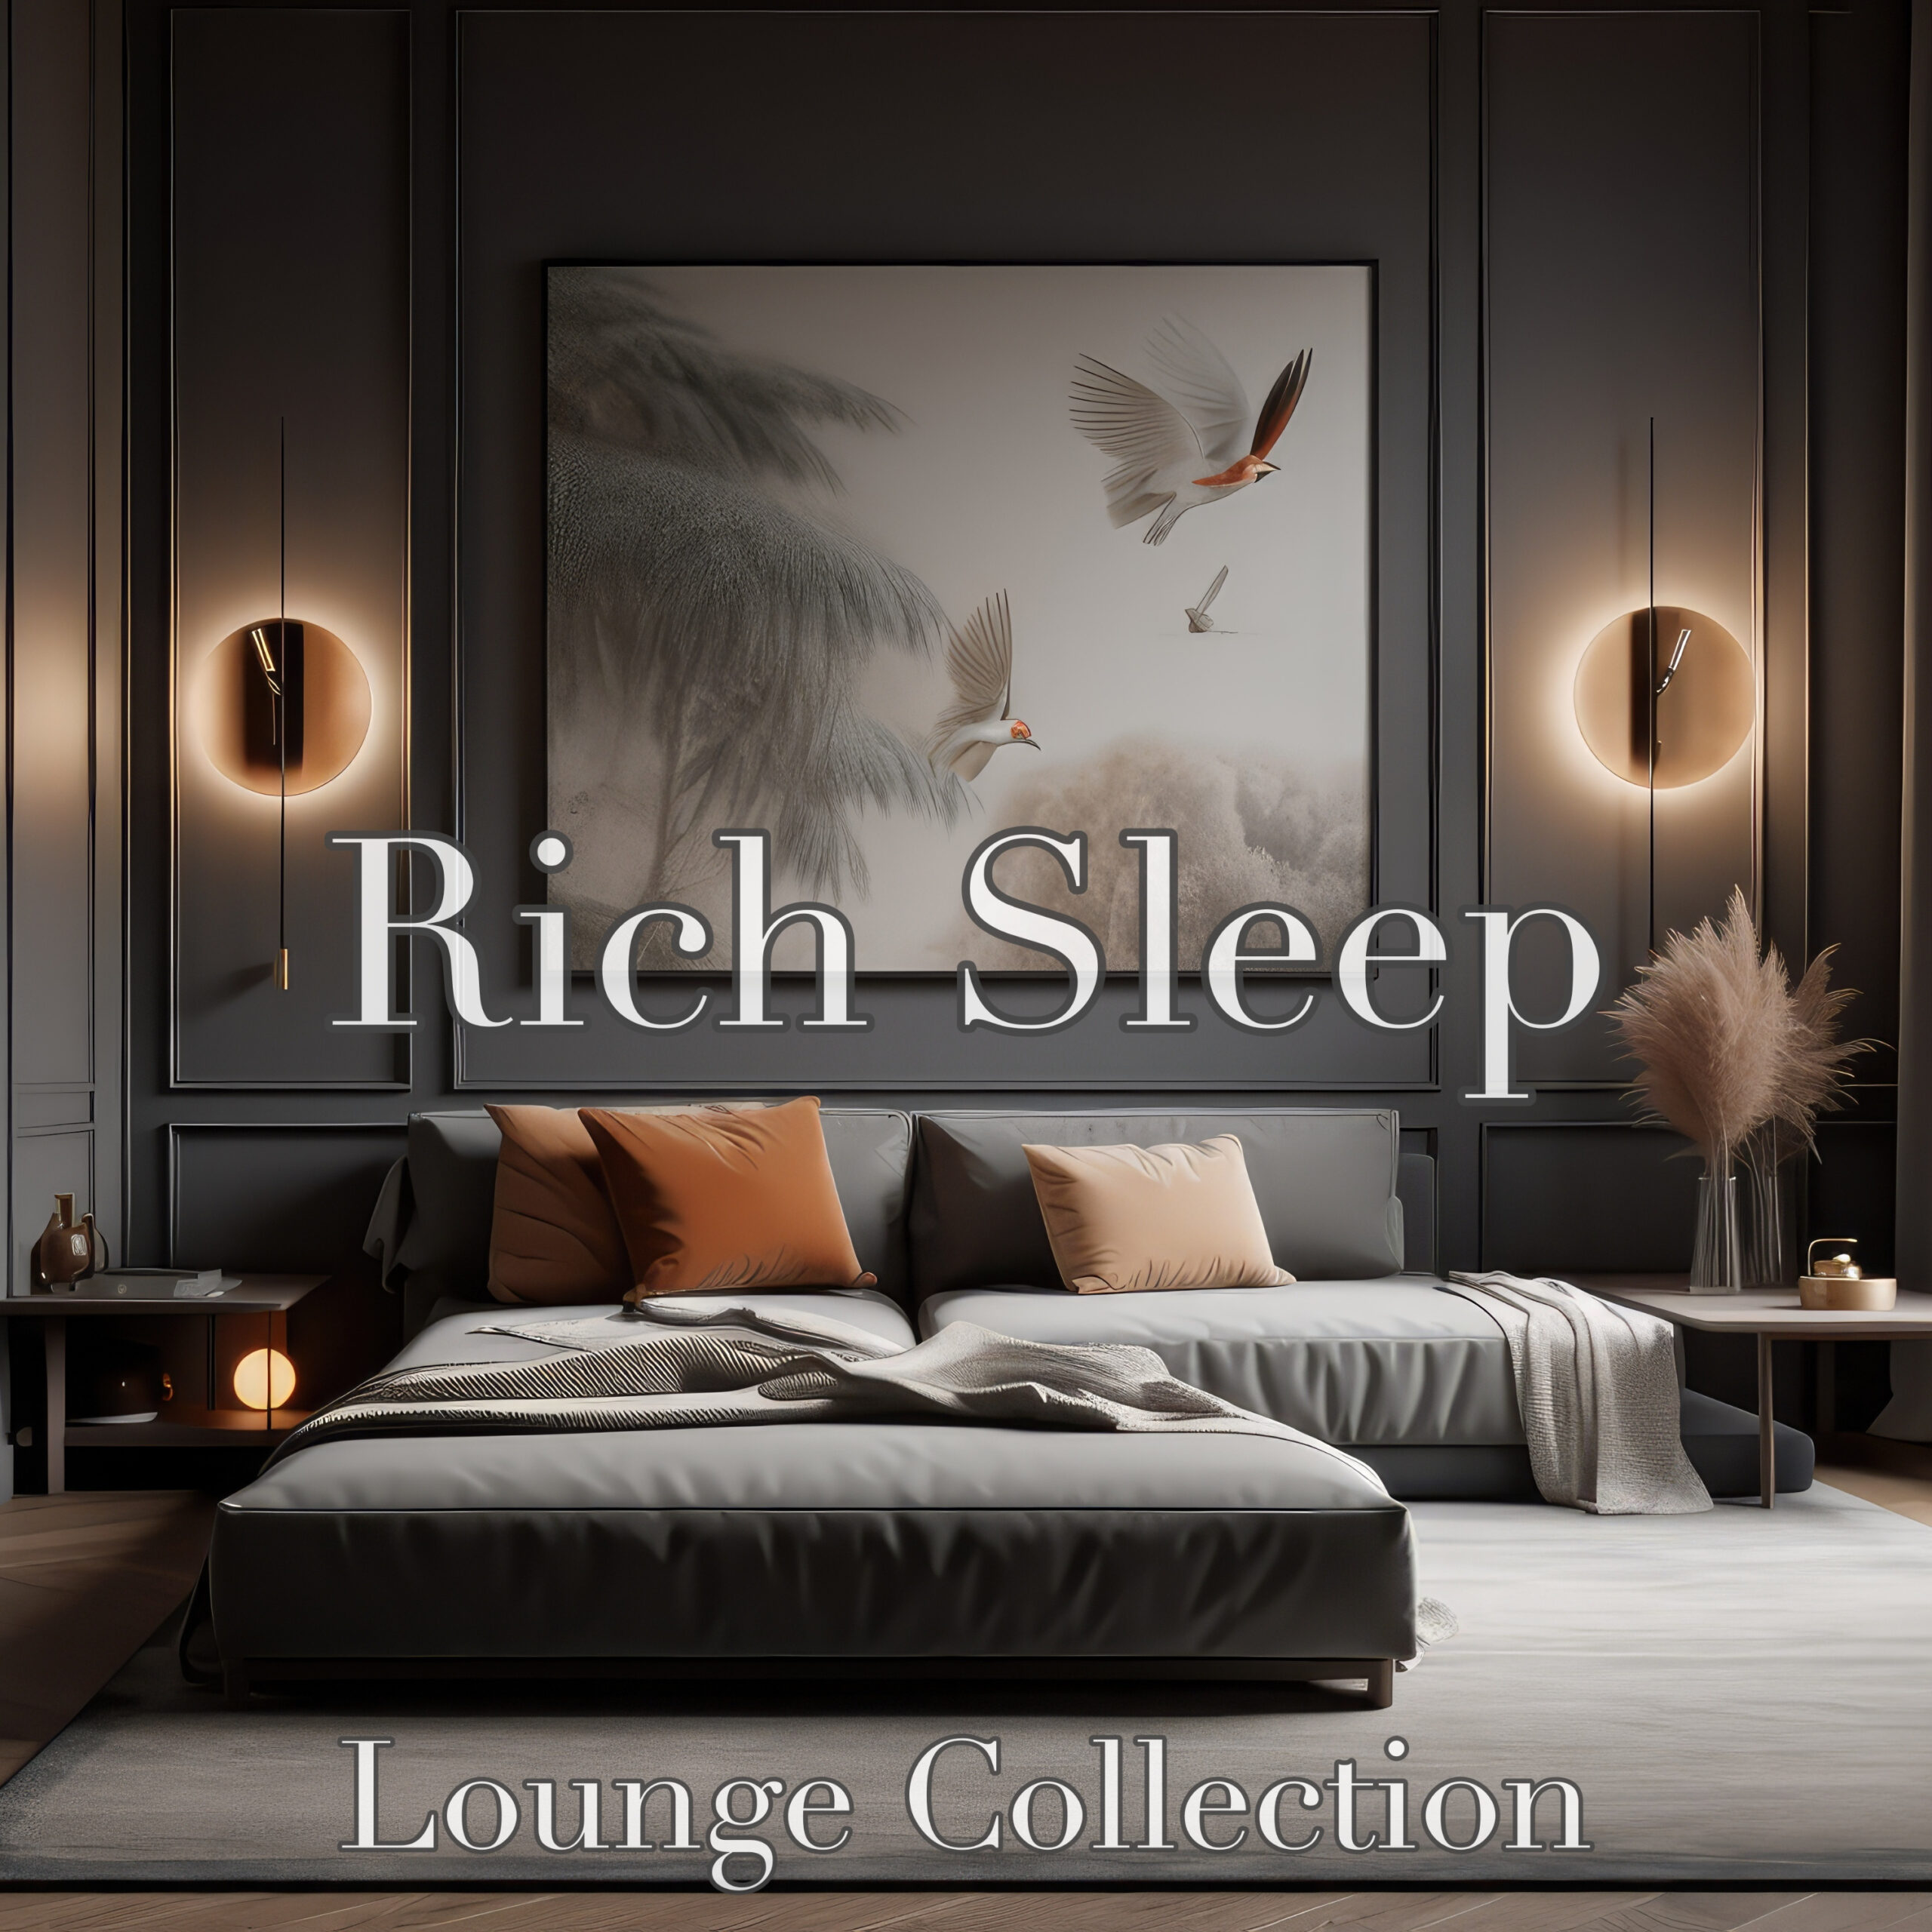 Rich Sleep Lounge Collection 贅沢な夜のひととき ホテルにいるようなリラックスタイム 睡眠用 瞑想用 作業用 癒しのピアノで心穏やかに眠る